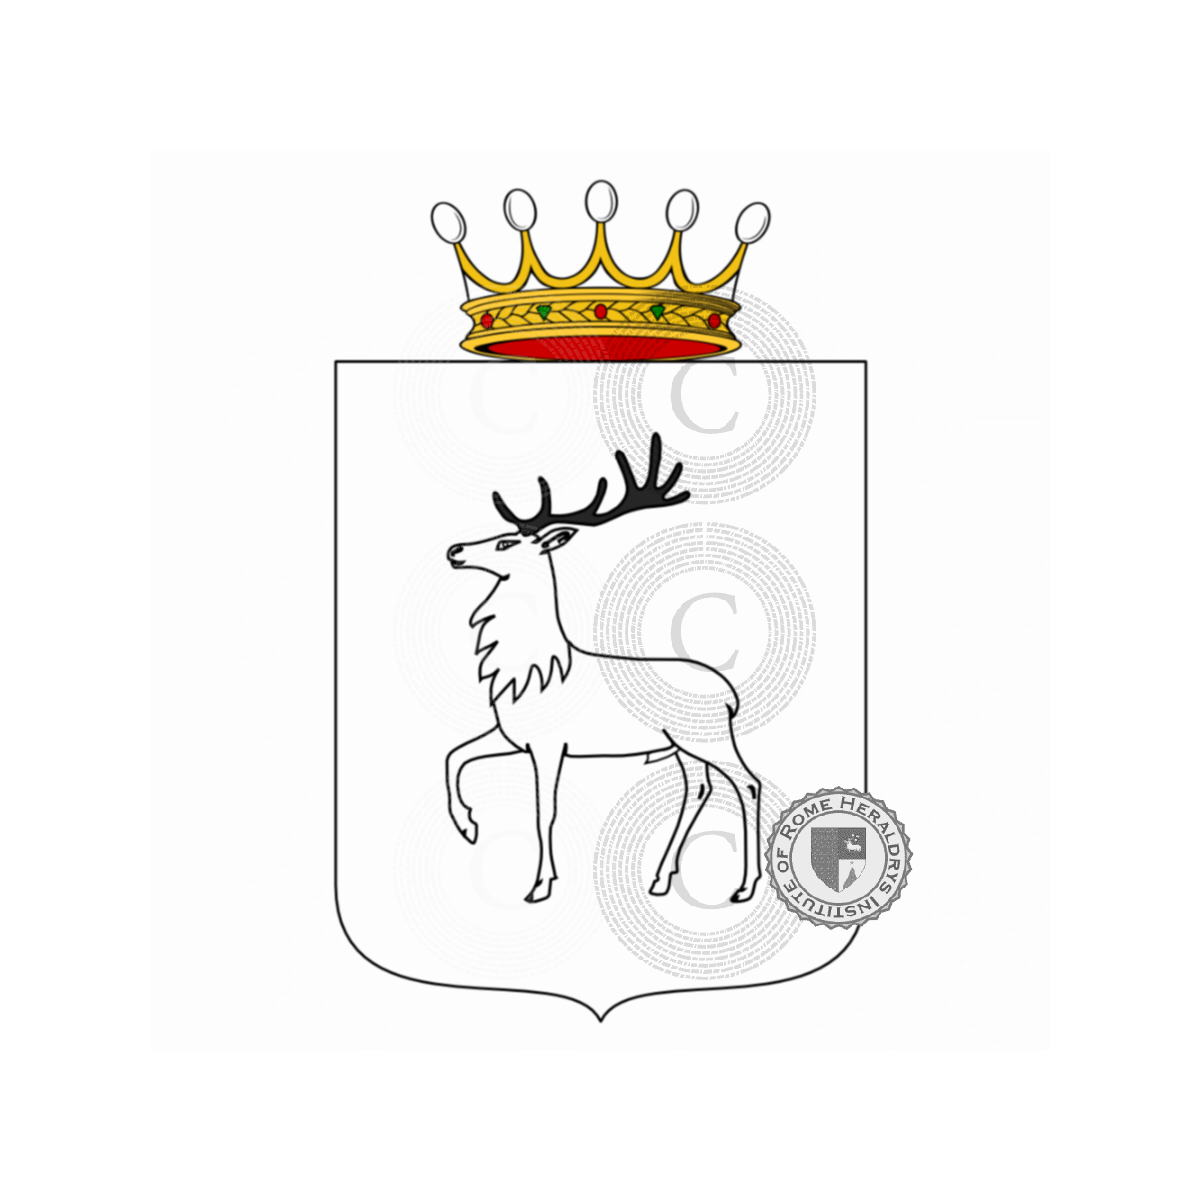 Coat of arms of familyPacini